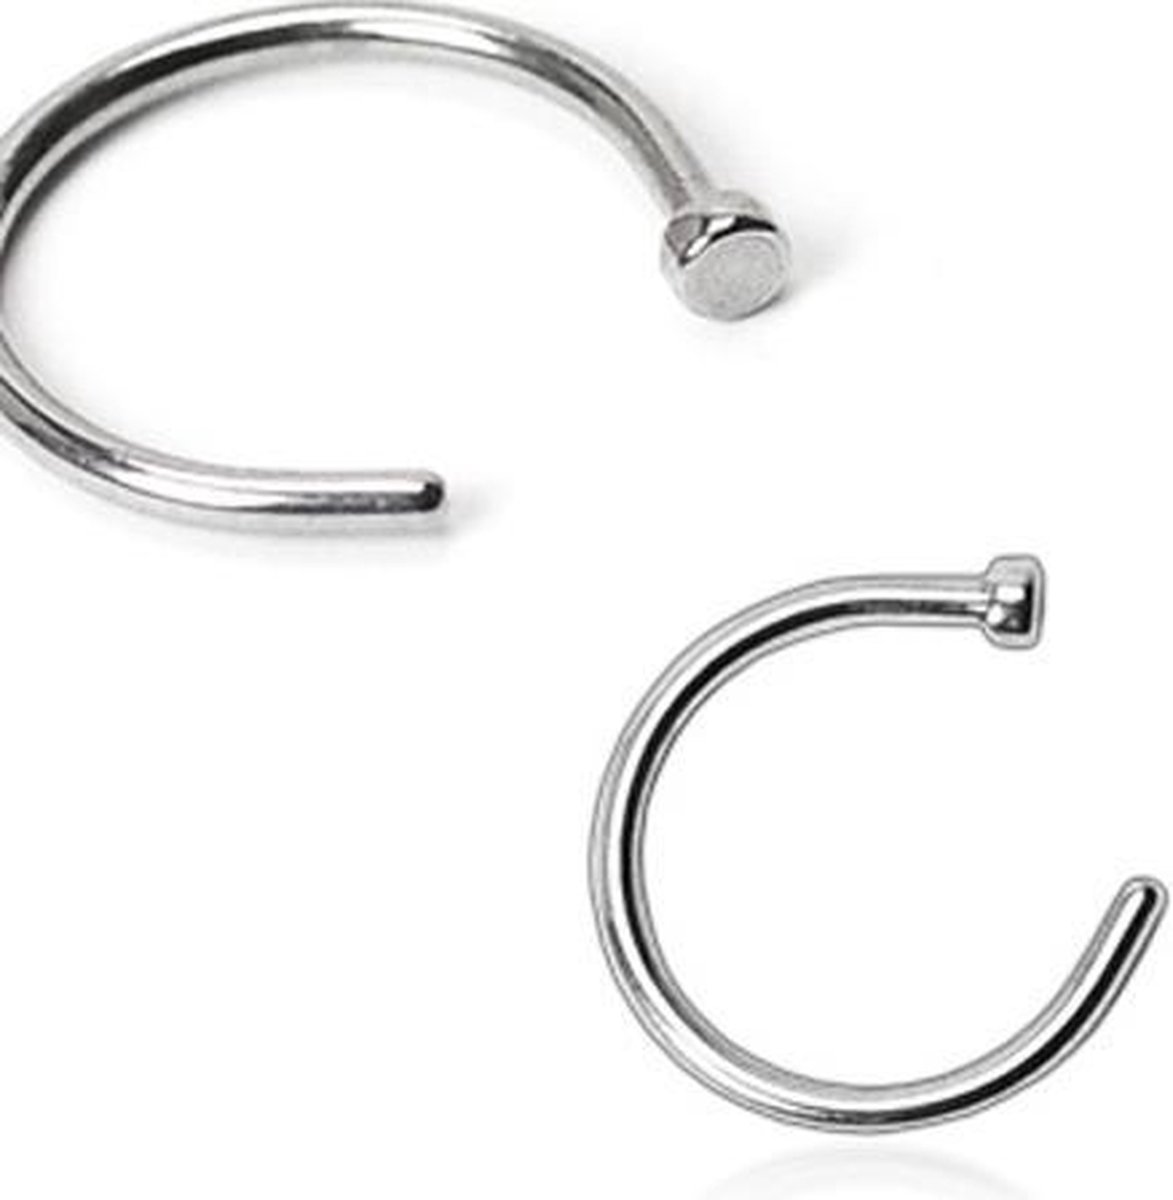 Piercing ring basis - LMPiercings NL